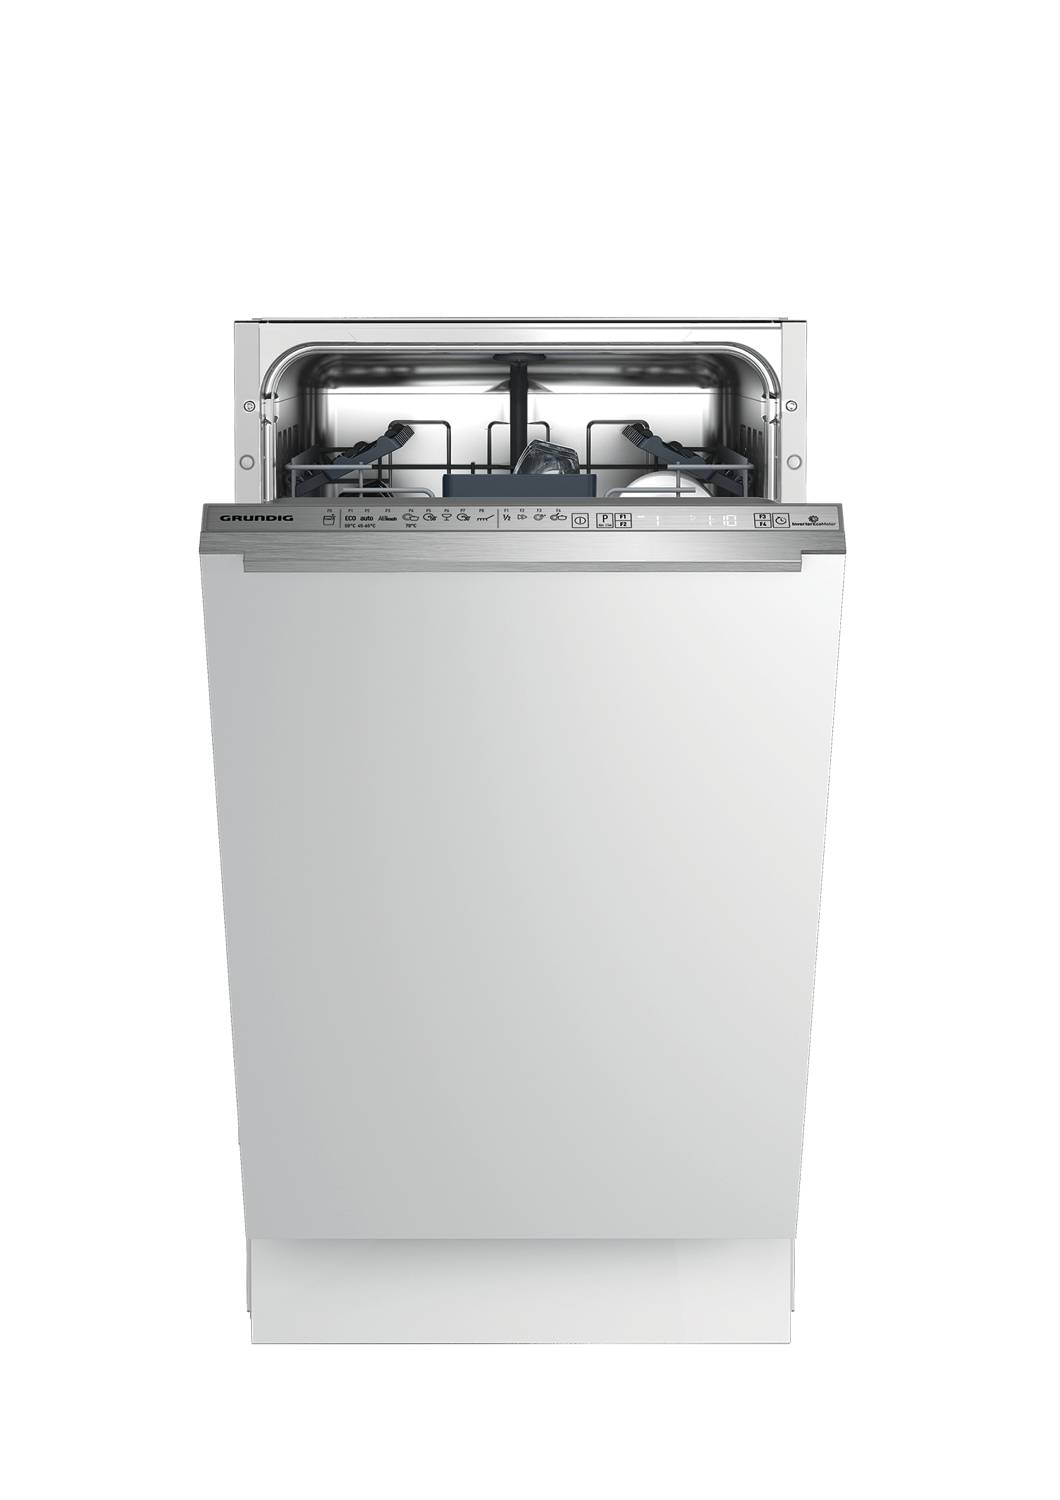 Сравнить посудомоечные машины. Посудомоечная машина Grundig gnfp3551w. Встраиваемая посудомоечная машина Грюндик 60 см. Посудомоечная машина Grundig gnv41825. Встраиваемая посудомоечная машина Grundig gsvp3150q.